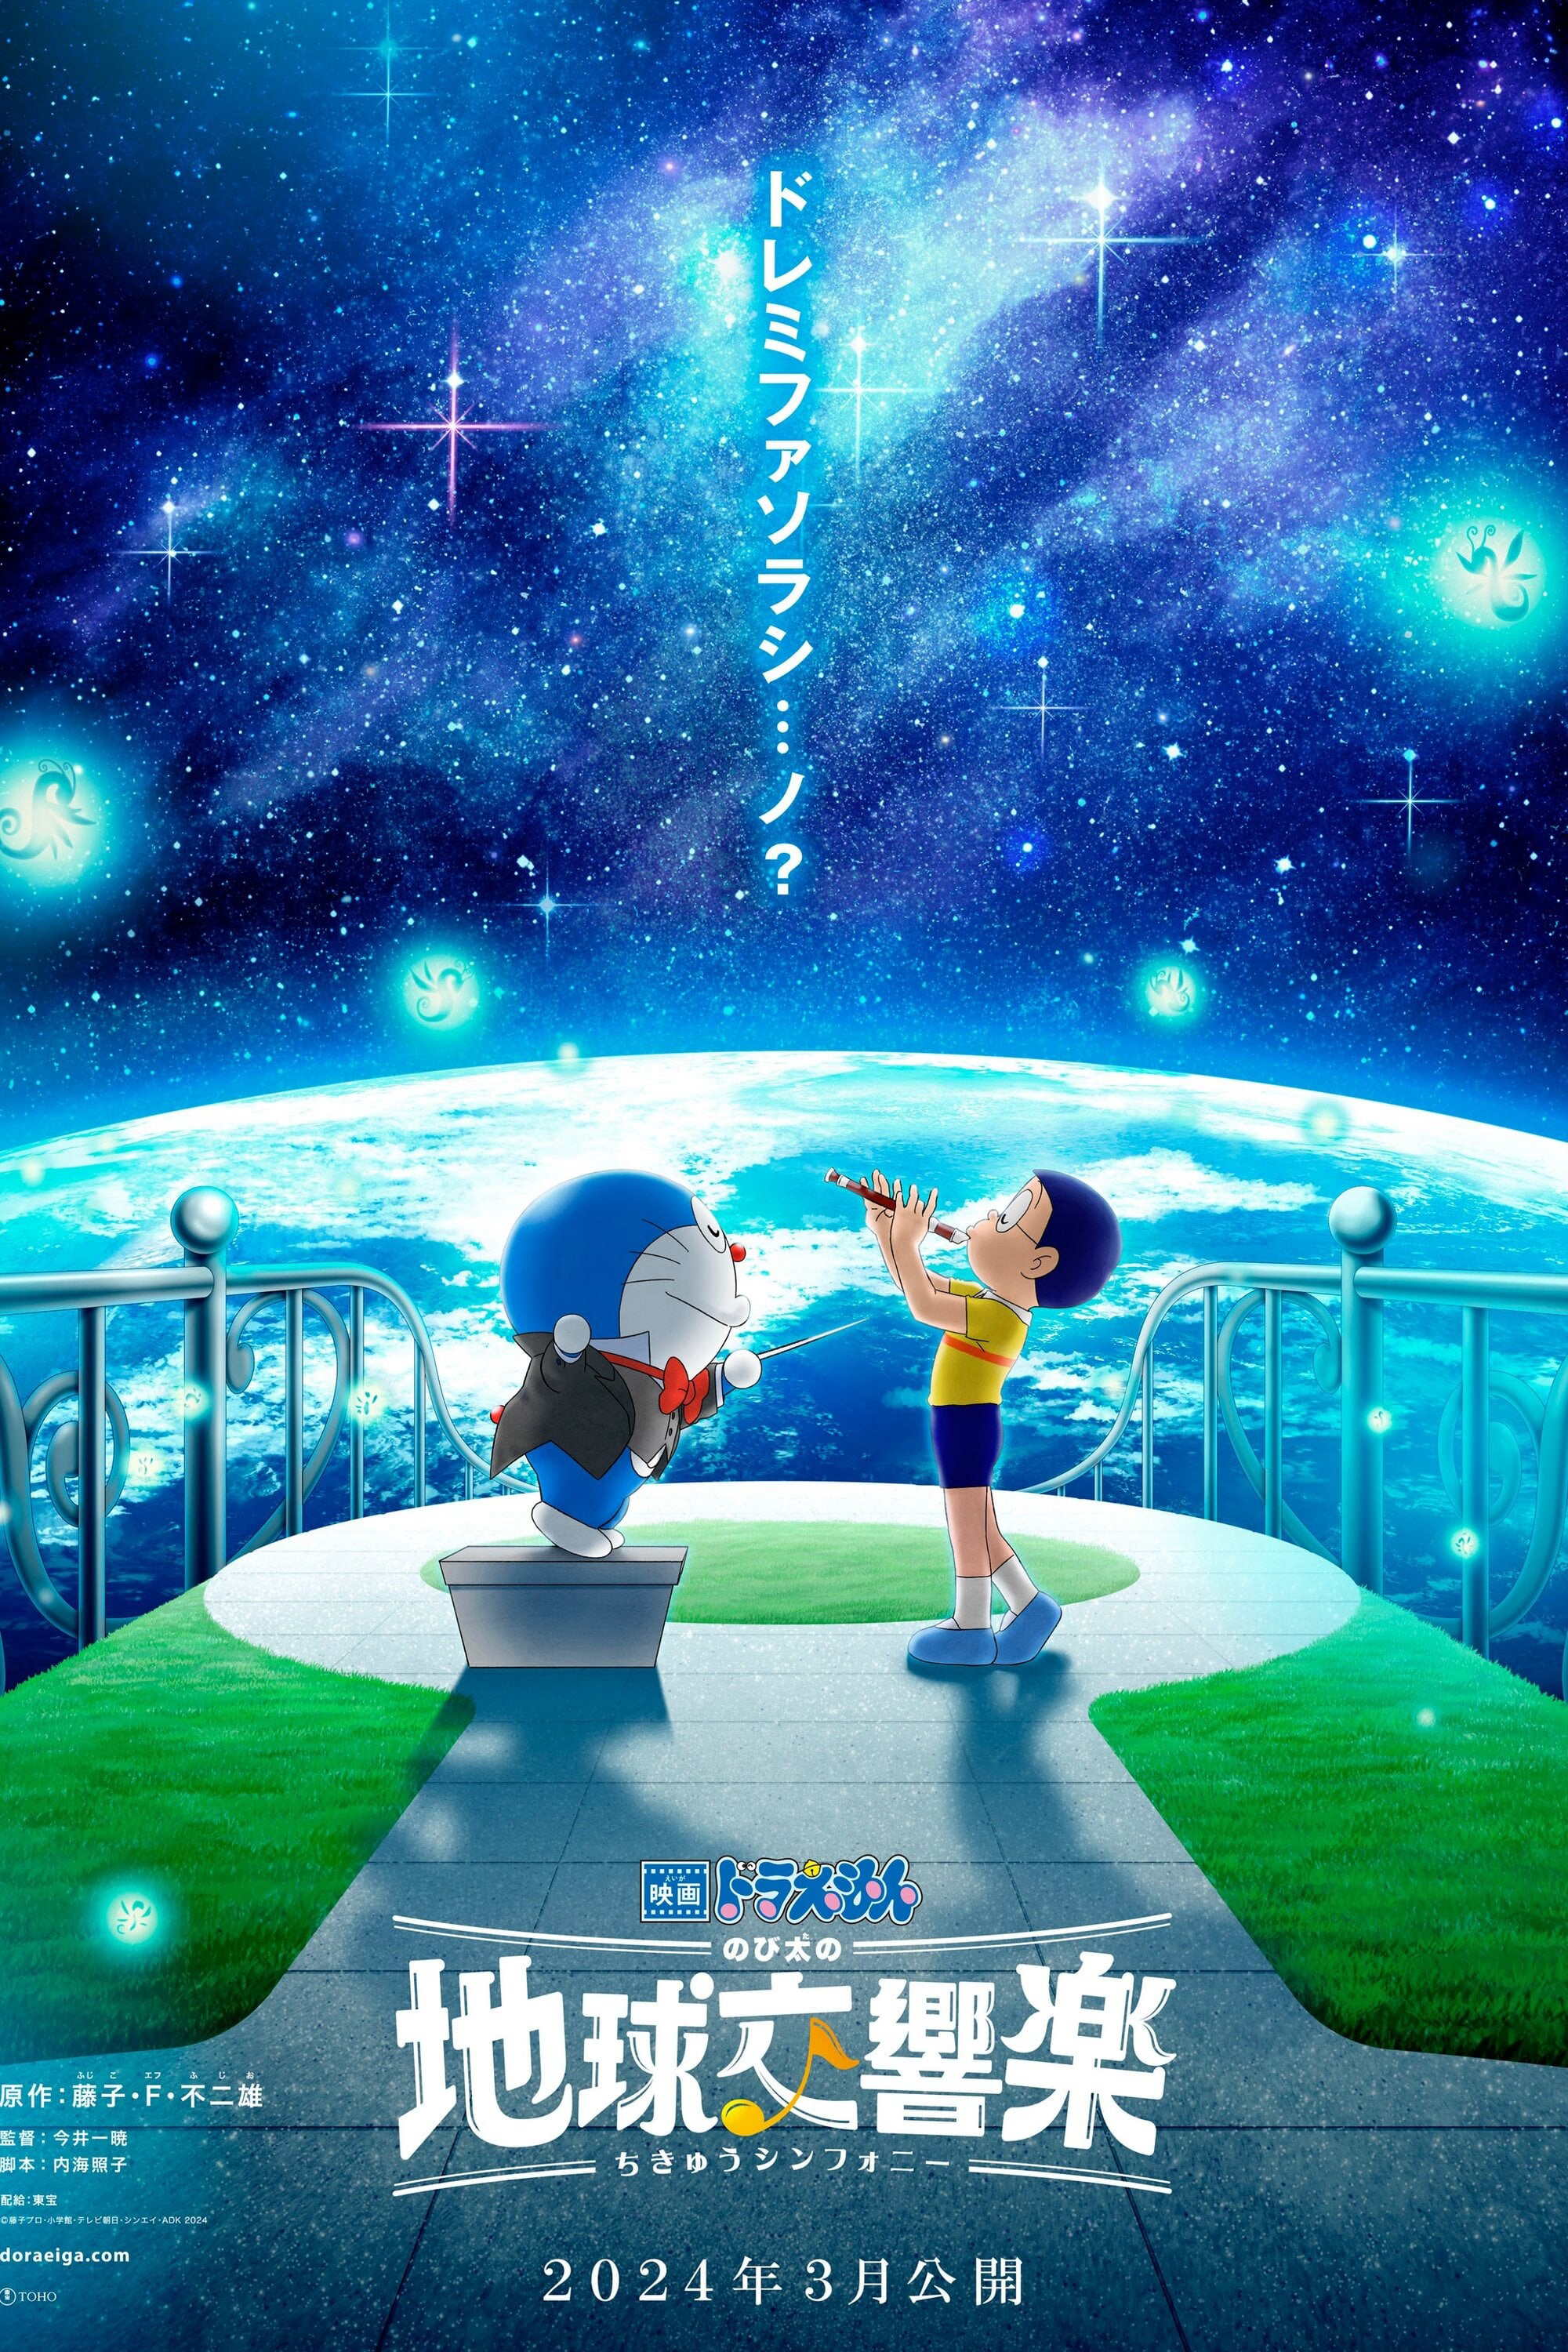 Xem Phim Doraemon: Nobita và bản giao hưởng Địa Cầu (Doraemon the Movie: Nobita's Earth Symphony)